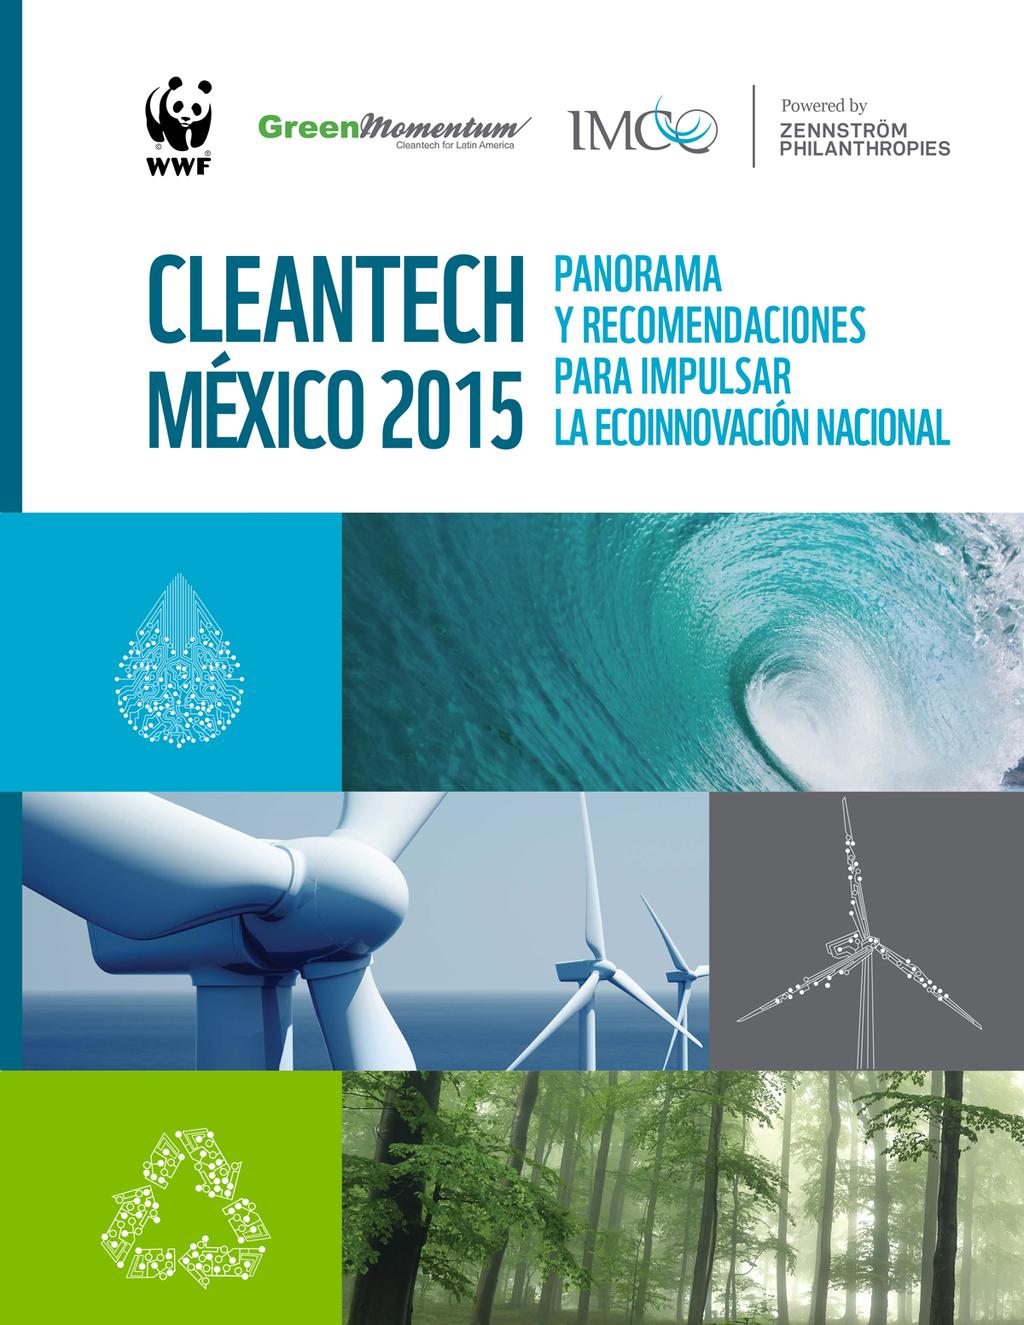 CONOCER EL ESTADO DE EMPRENDIMIENTO CLEANTECH 1 Primer estudio sobre la situación actual de los emprendedores en tecnologías limpias en México 2 Análisis de las políticas públicas relevantes